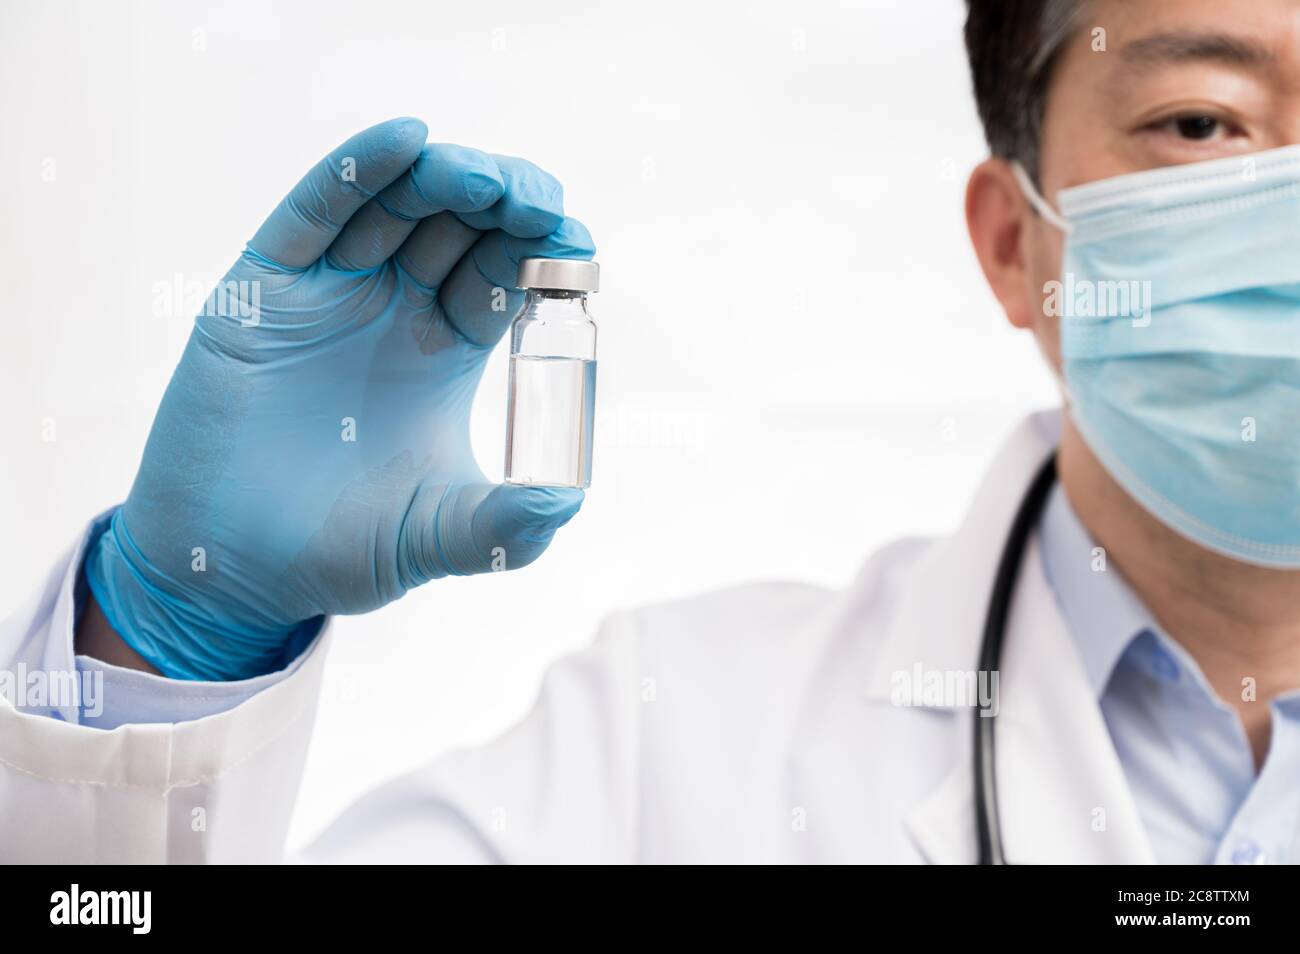 Die Hand des Arztes trägt blaue Handschuhe vor weißem Hintergrund und hält den Covid-19-Impfstoff. Stockfoto